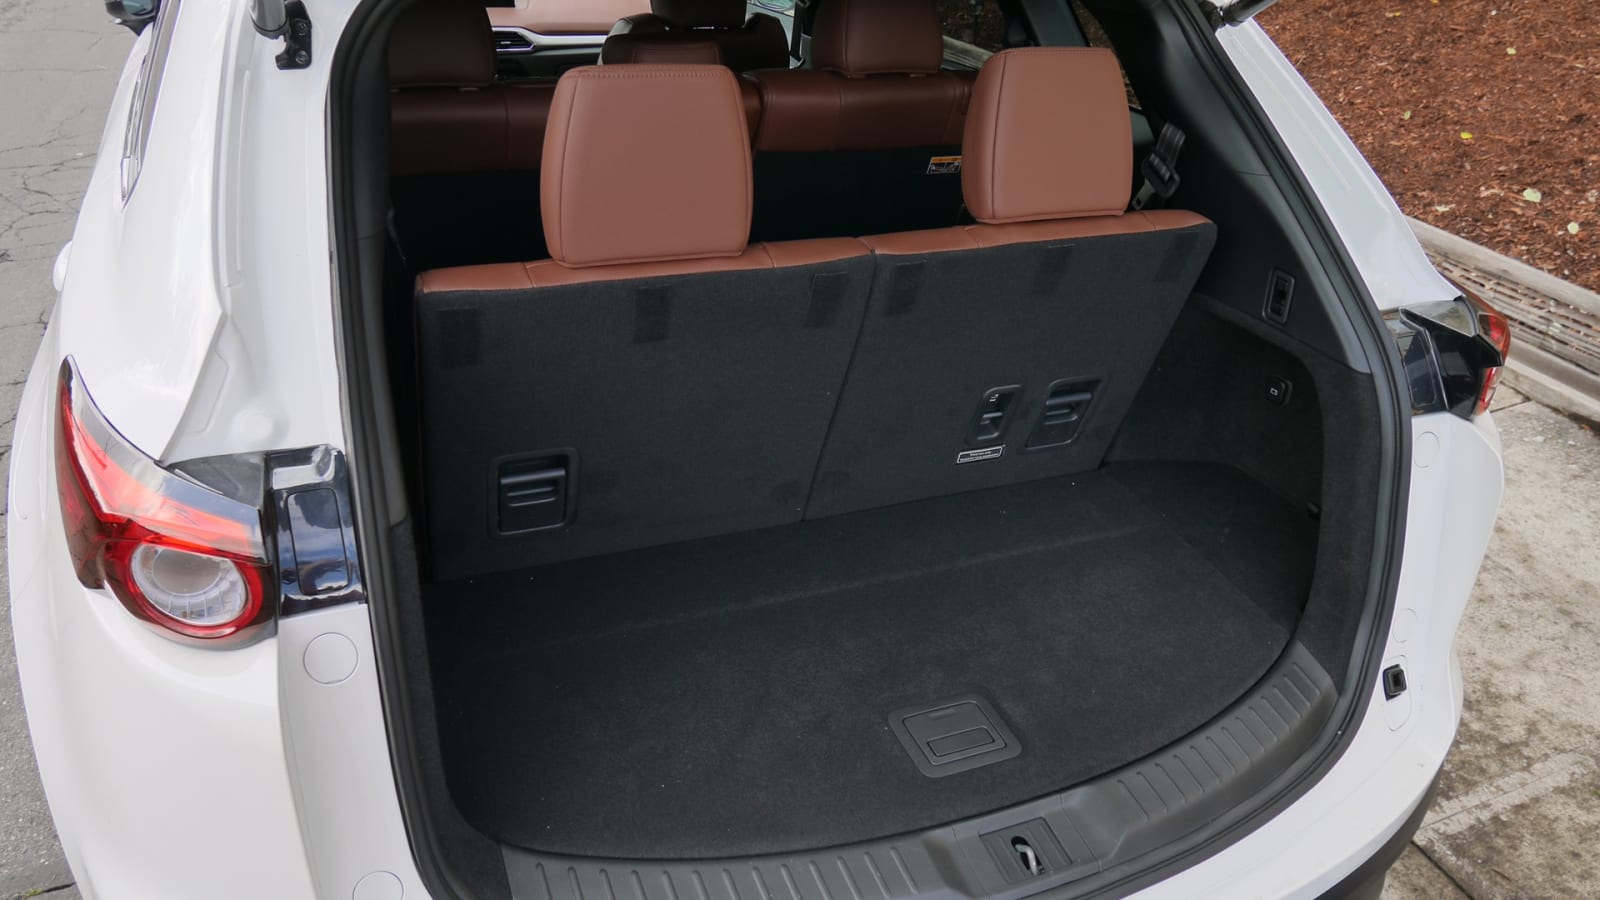 Mazda Cx 9 Interior Dimensions Home Alqu